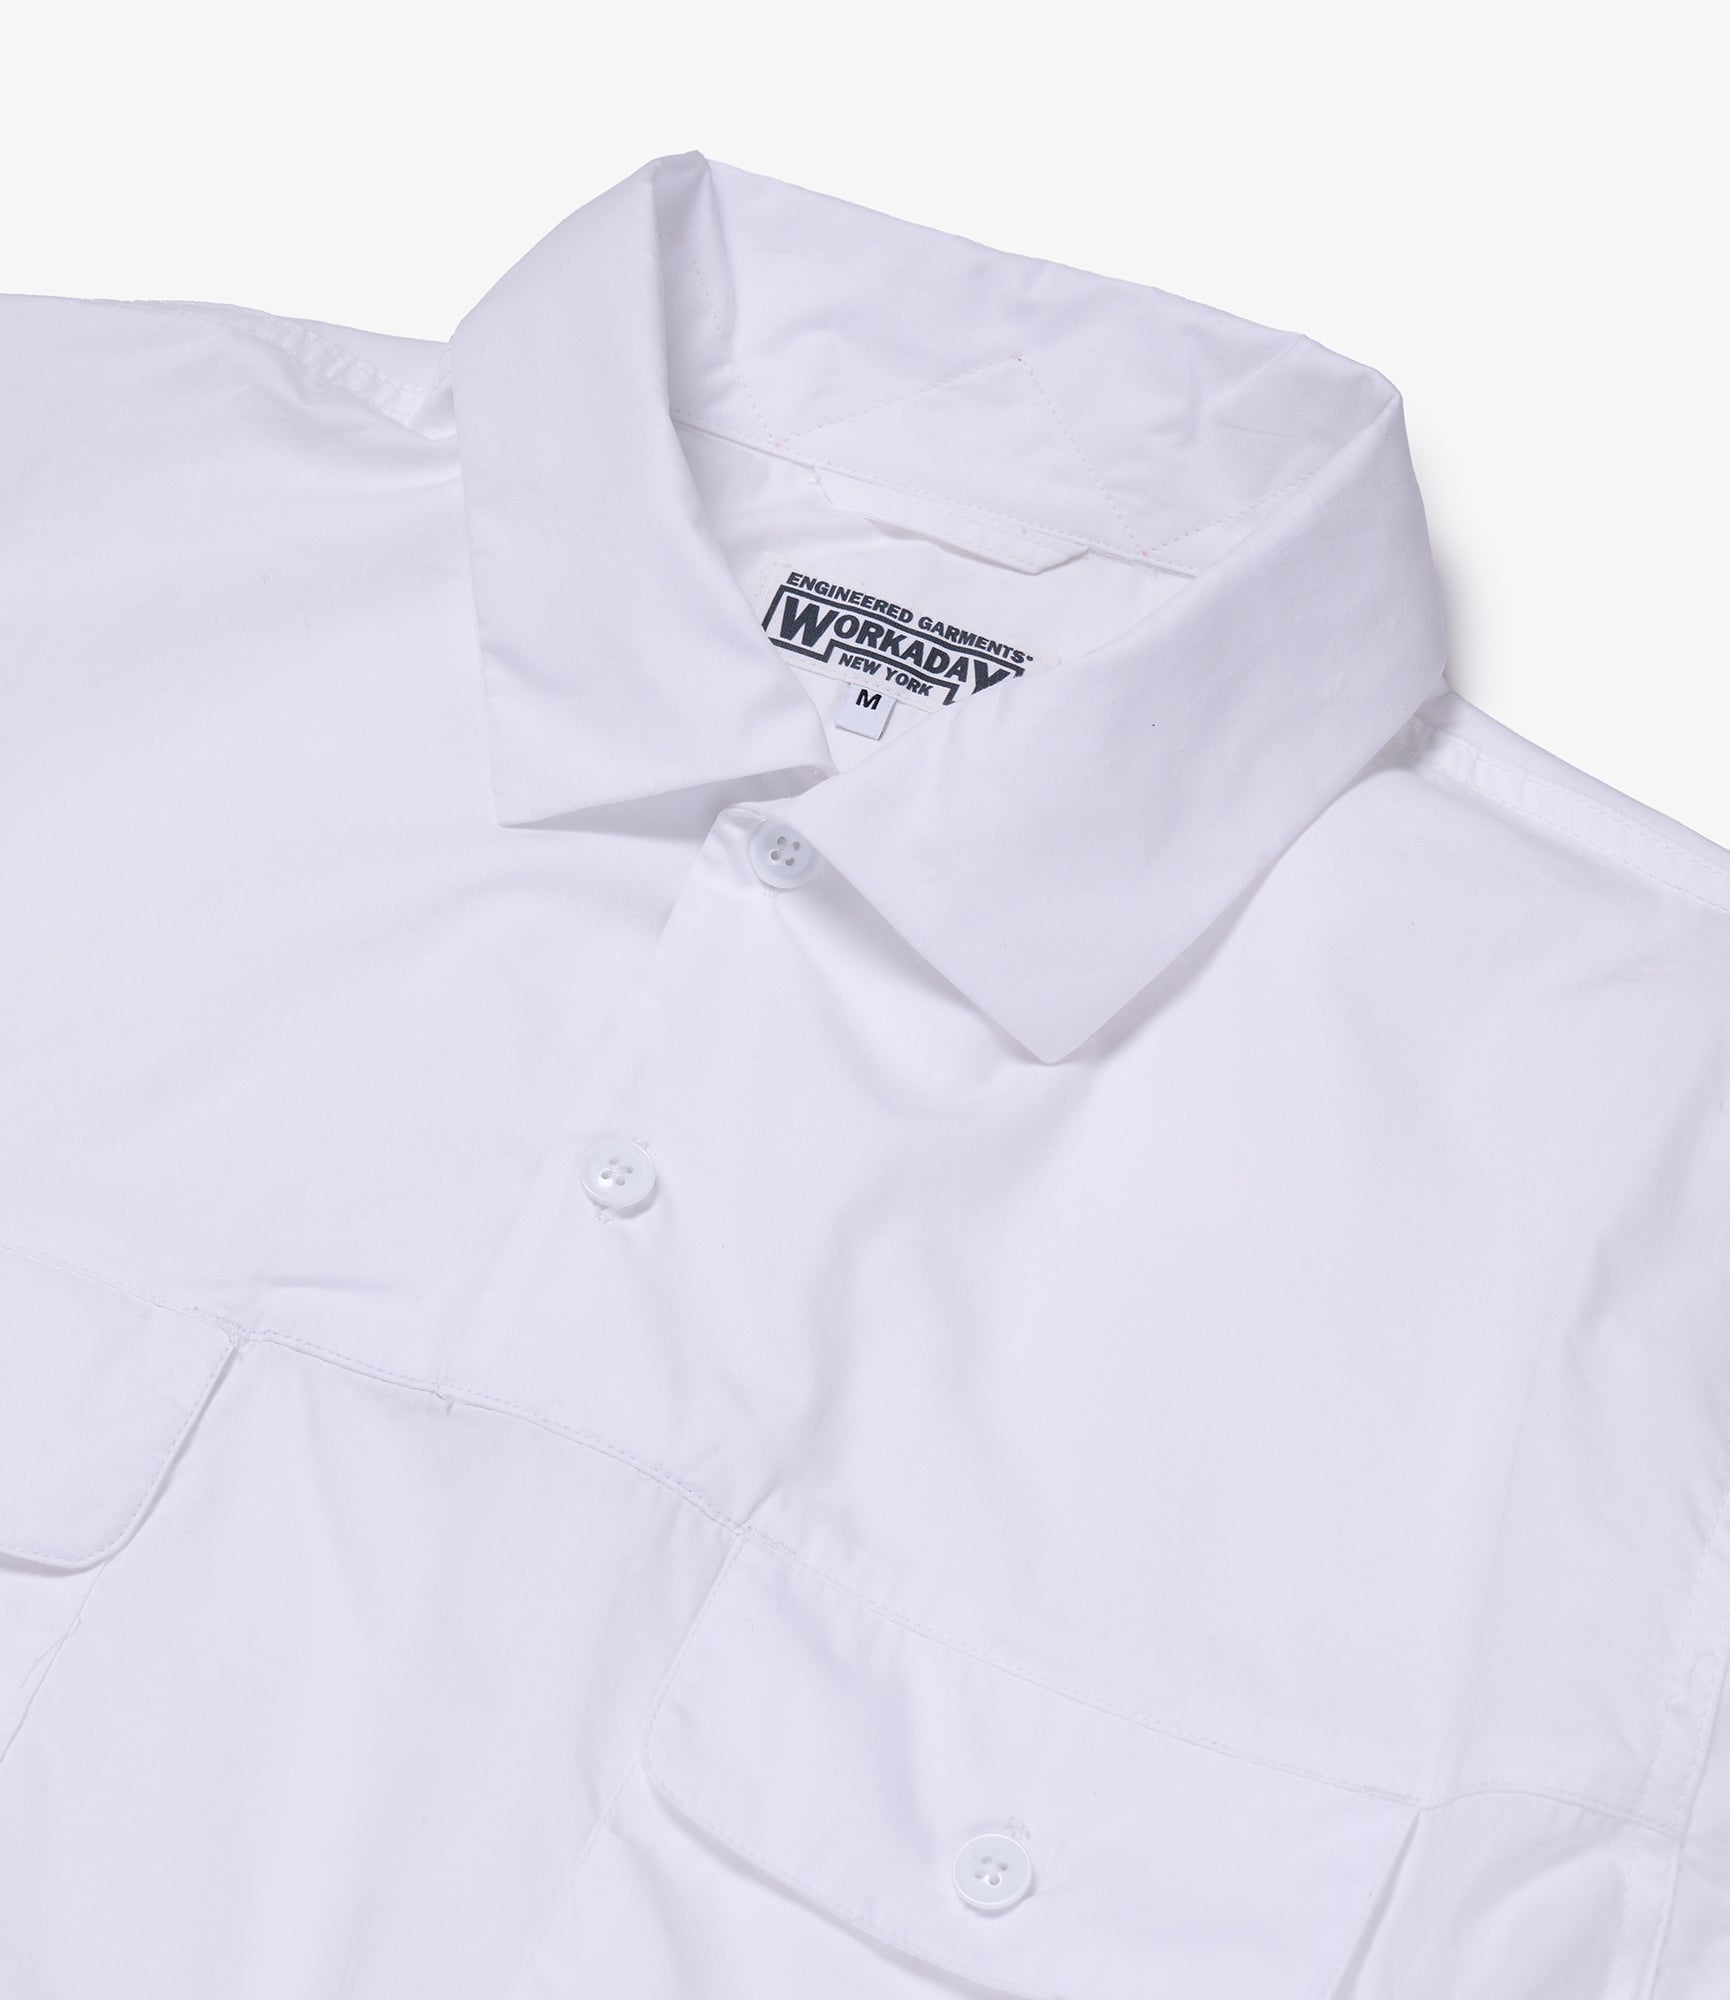 Jumper Shirt - White Superfine Poplin